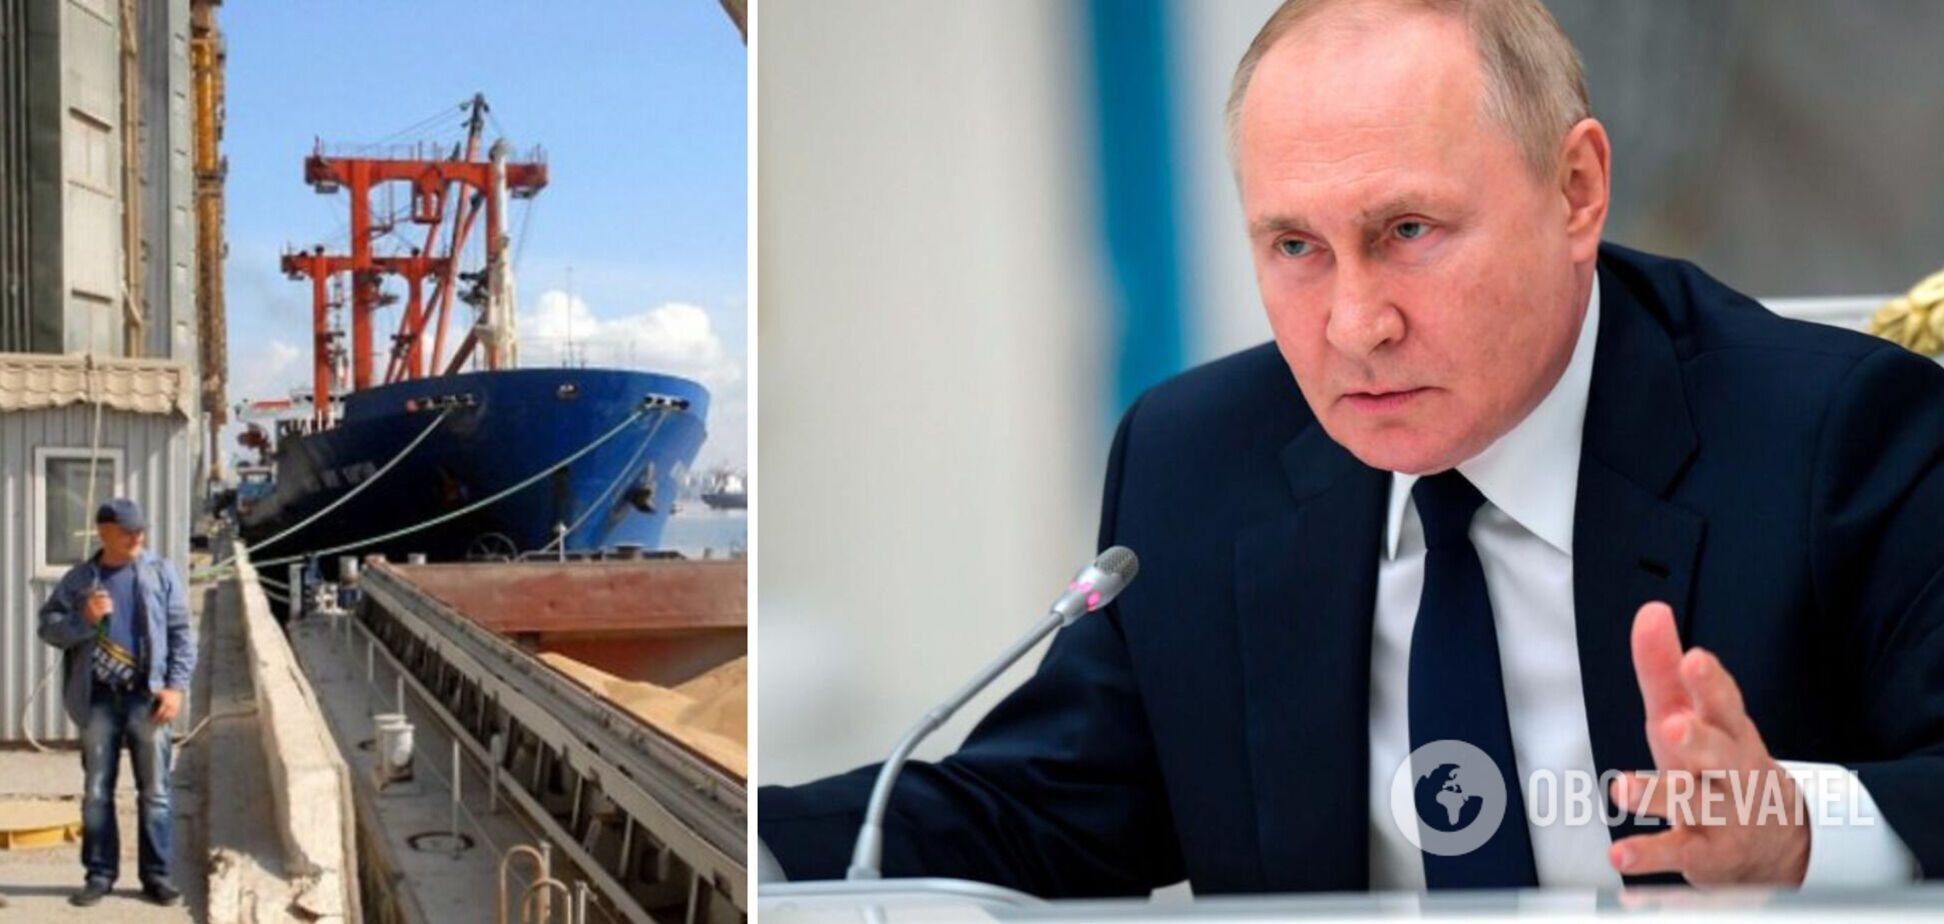 Путин планирует использовать 'зерновое соглашение' как рычаг влияния на встрече G20